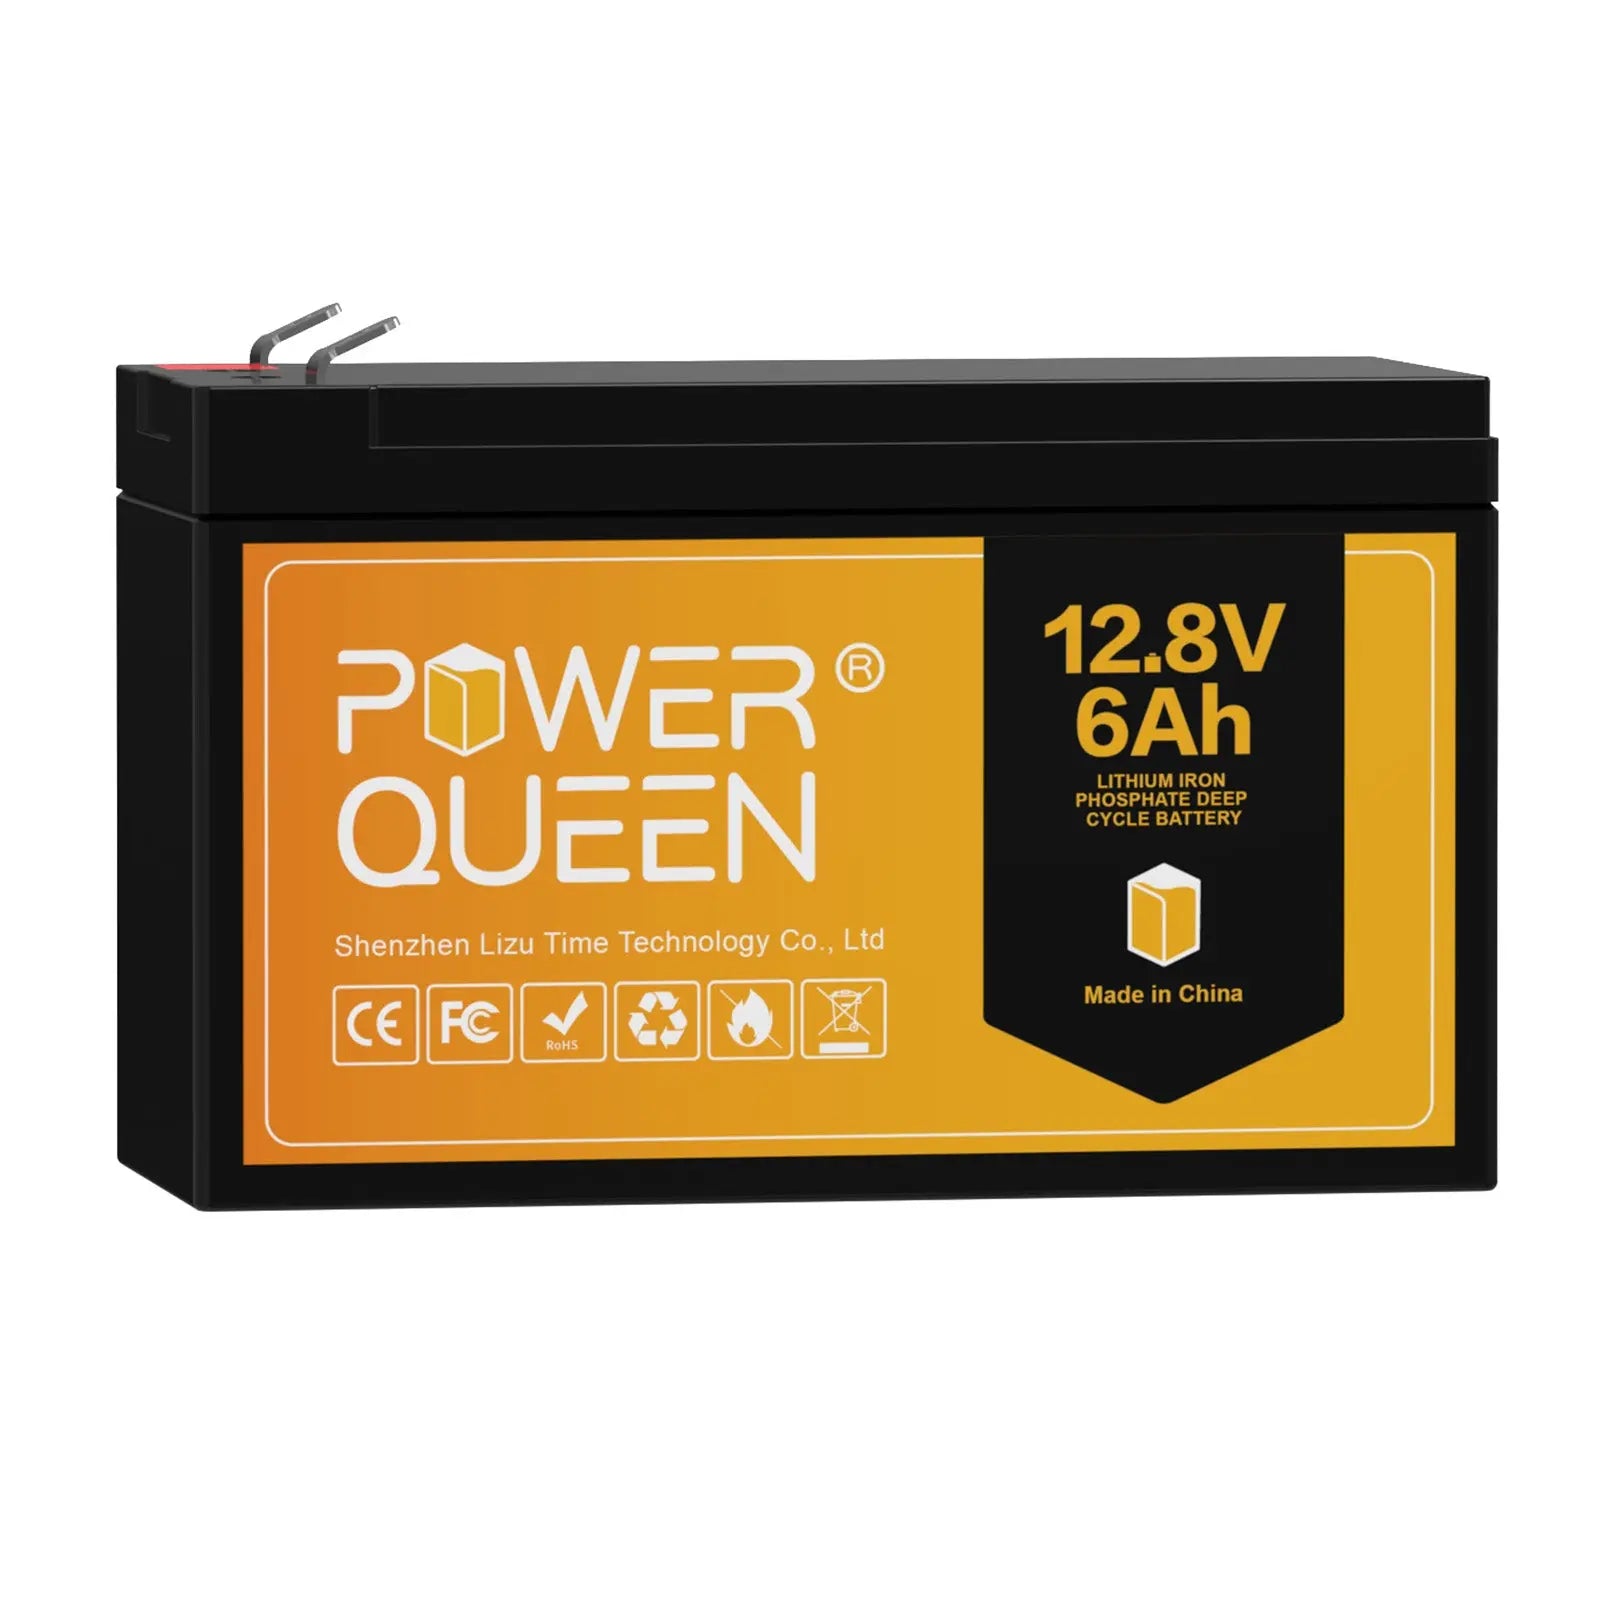 Power Queen 12.8V 6Ah LiFePO4 Battery, Built-IN 6A BMS Power Queen